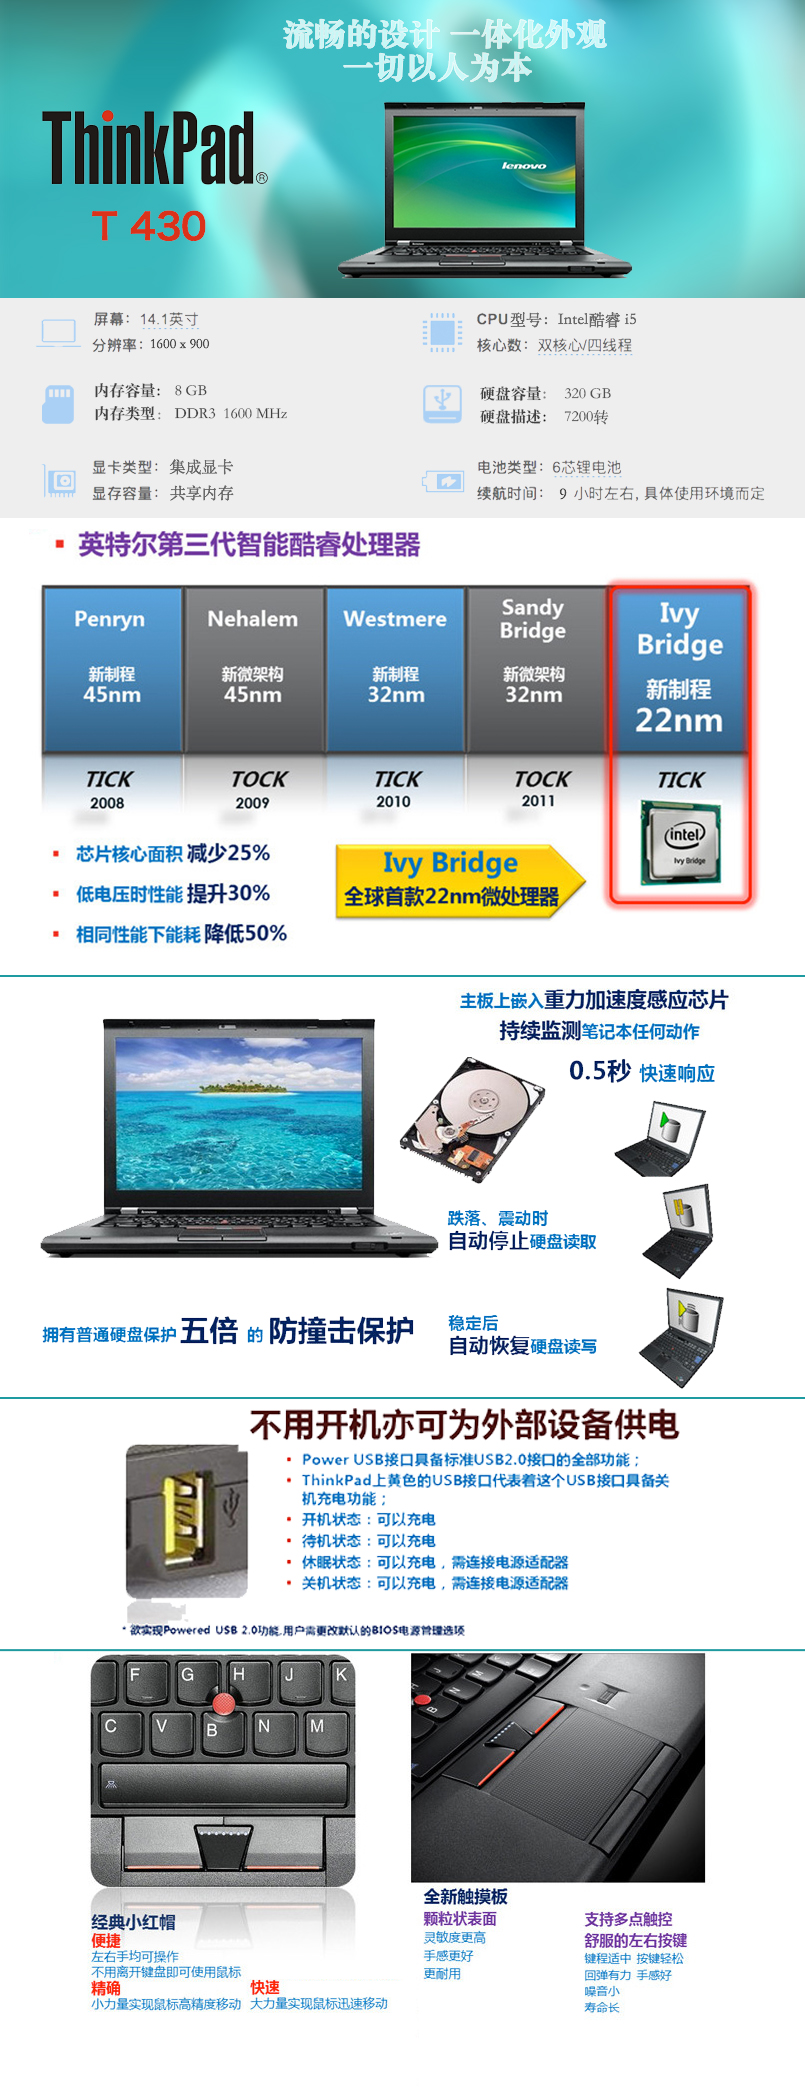 联想ThinkPad T430笔记本电脑租赁 I5处理器8G内存320G硬盘集成显卡DVD刻录光驱